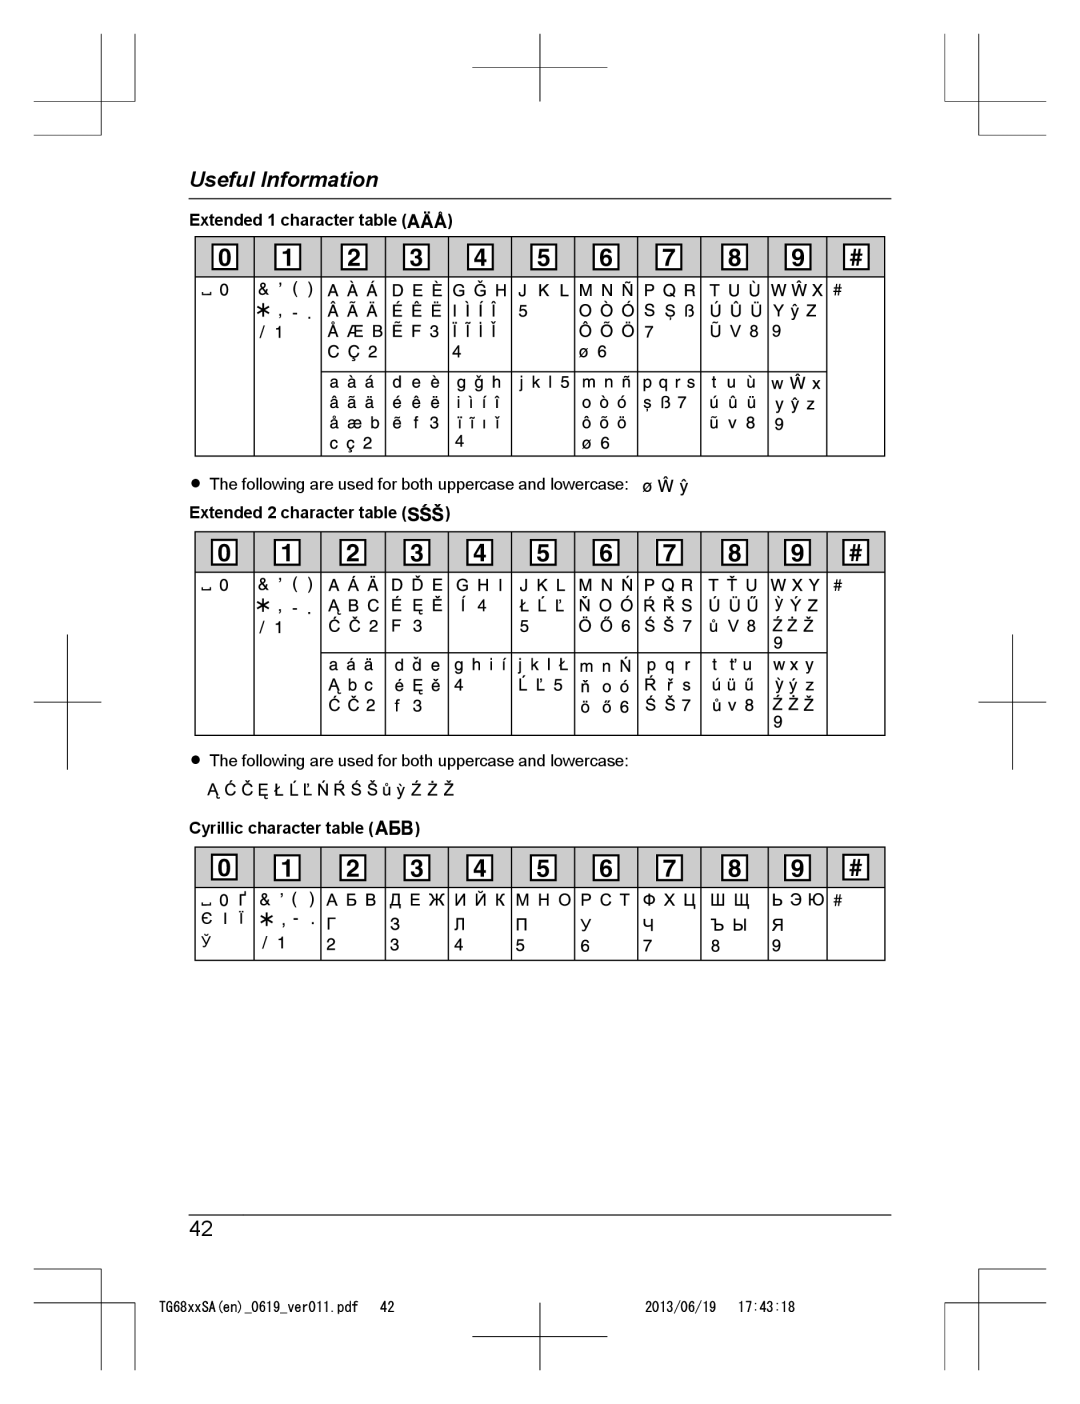 Panasonic KX-TG6812SA Extended 1 character table, Extended 2 character table, Cyrillic character table, Useful Information 